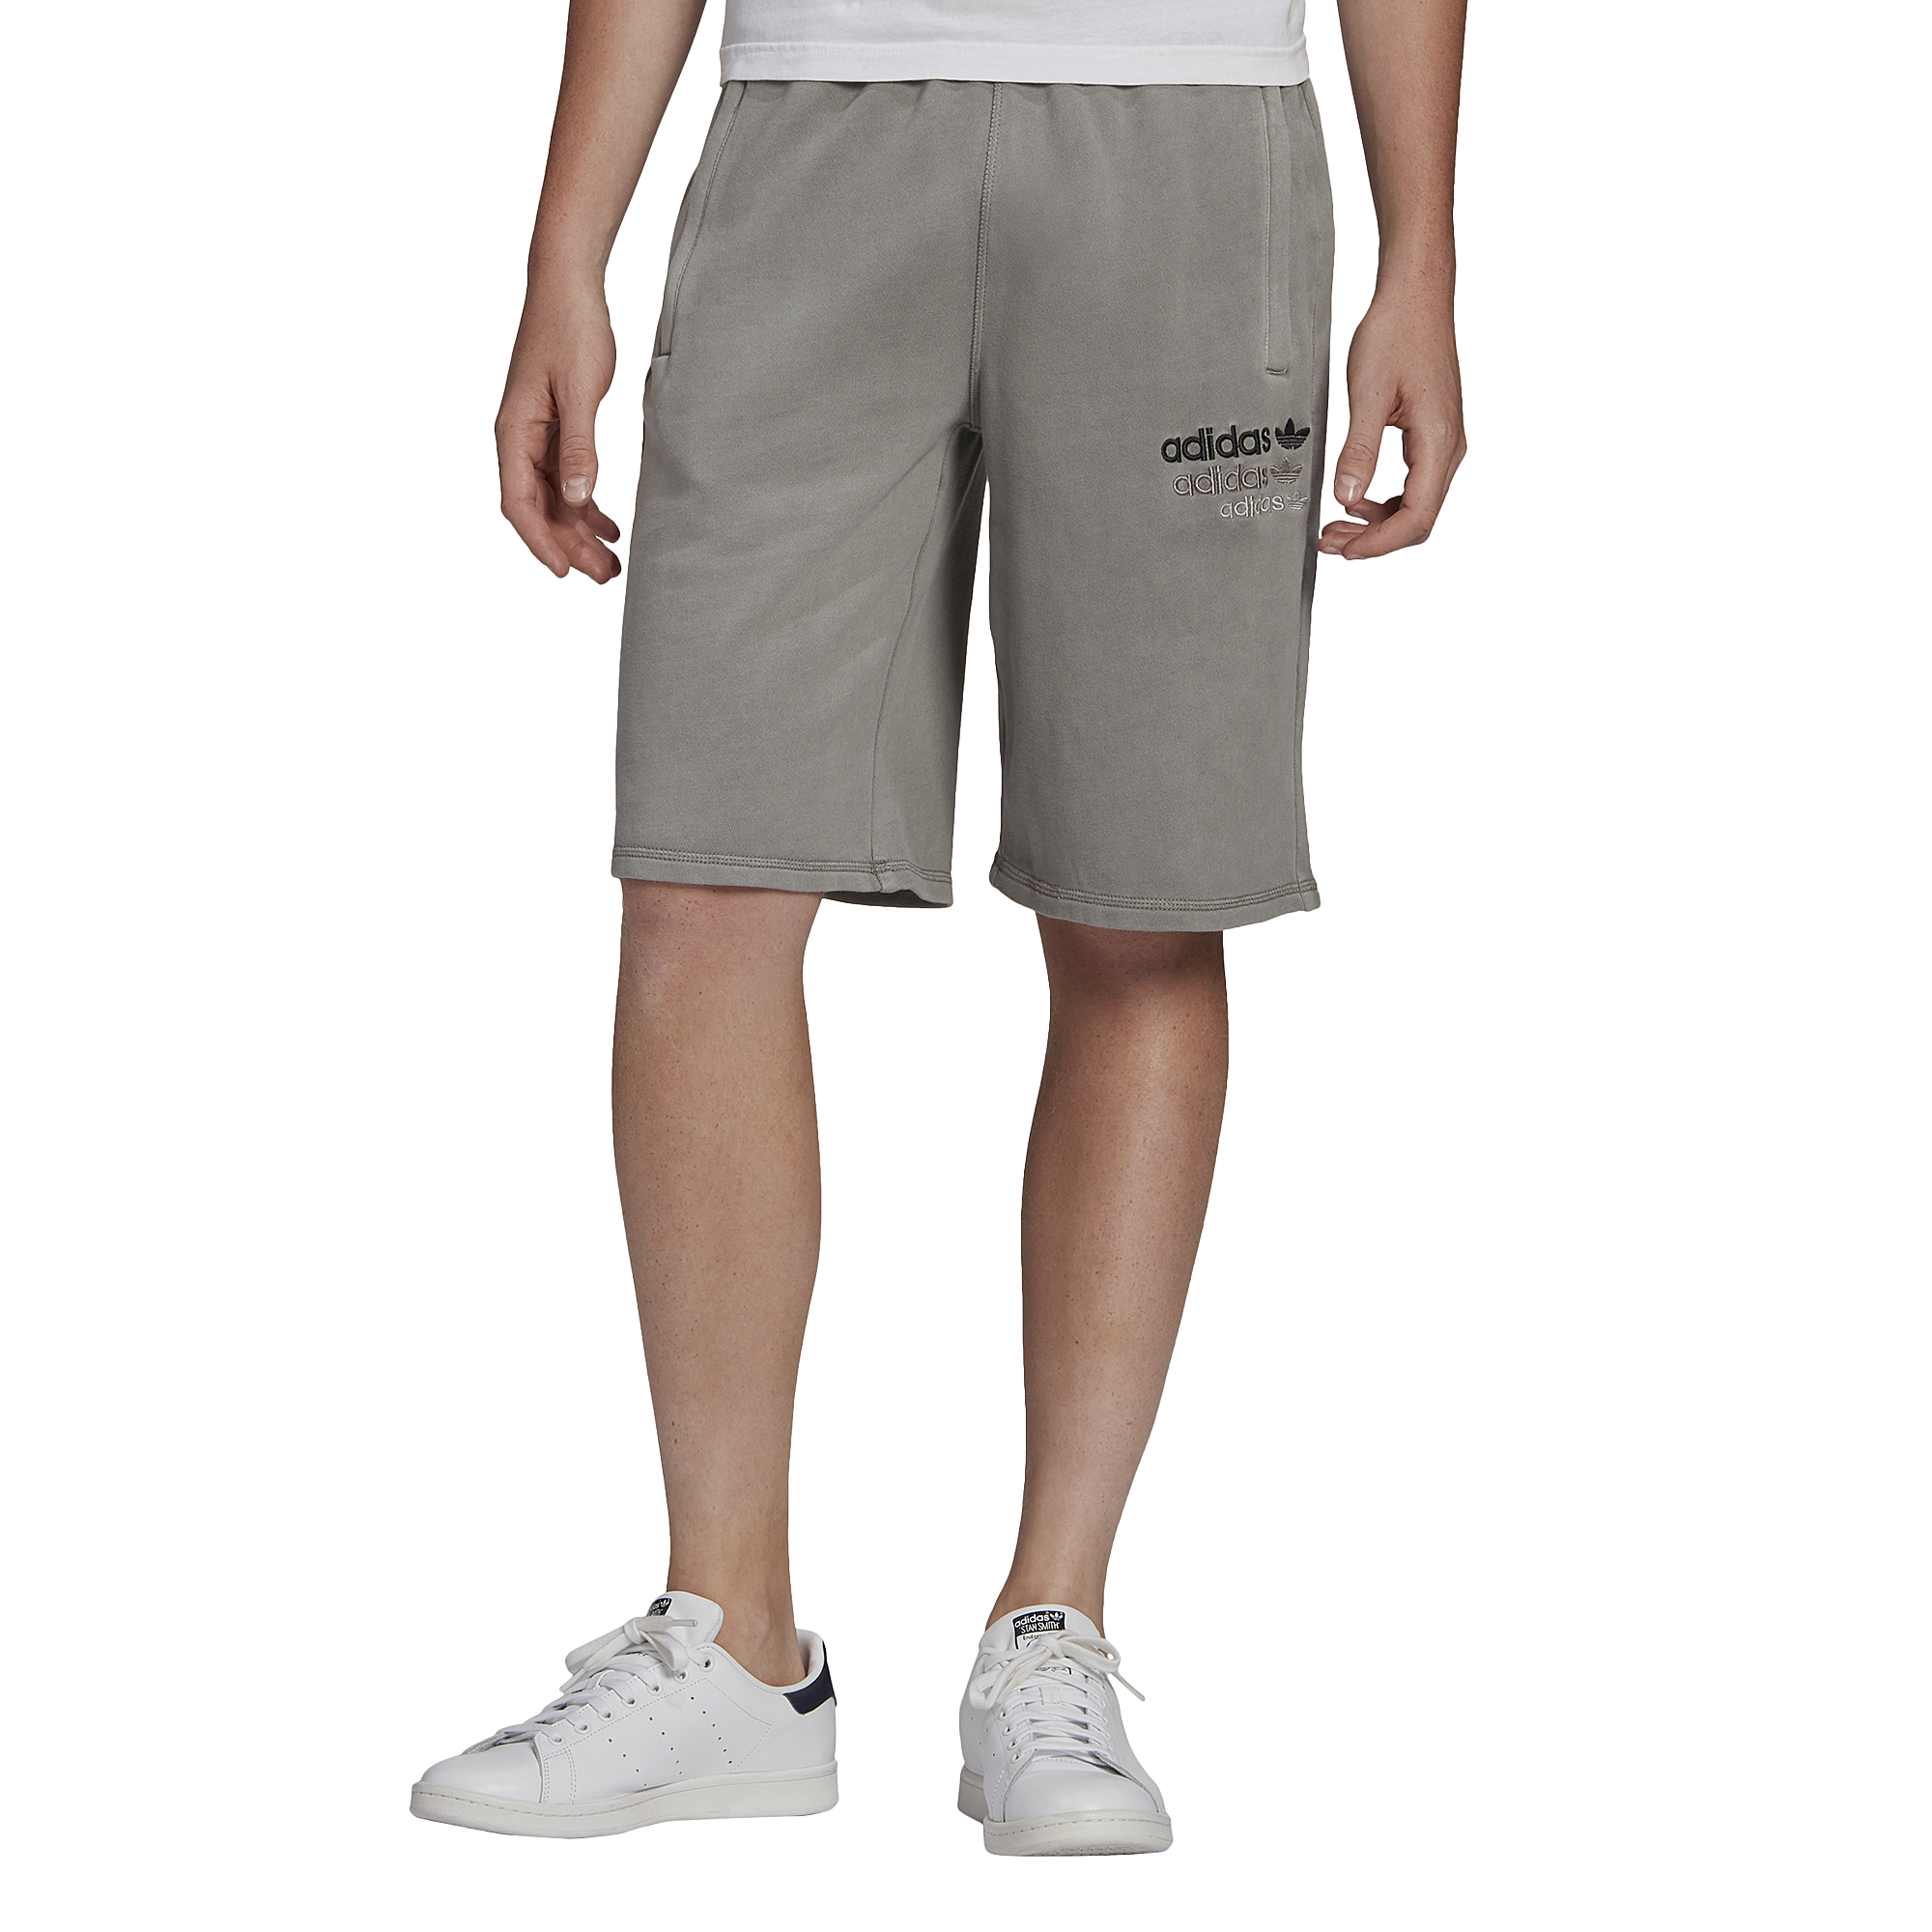 foot locker adidas shorts